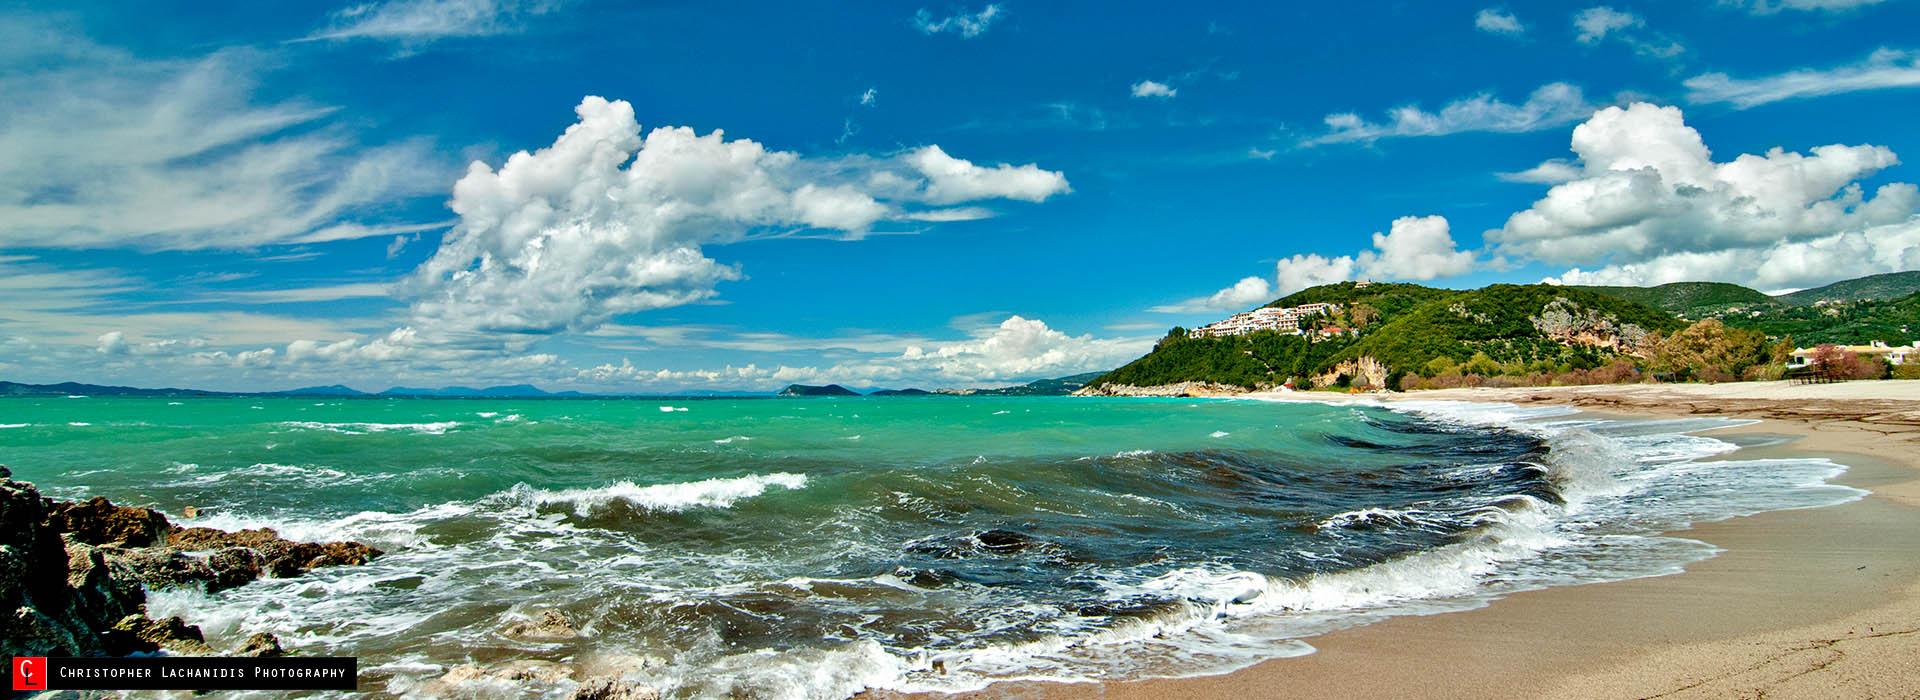 Παραλία Καραβοστάσι άγρια ομοφριά όλες τις εποχές του χρόνου!